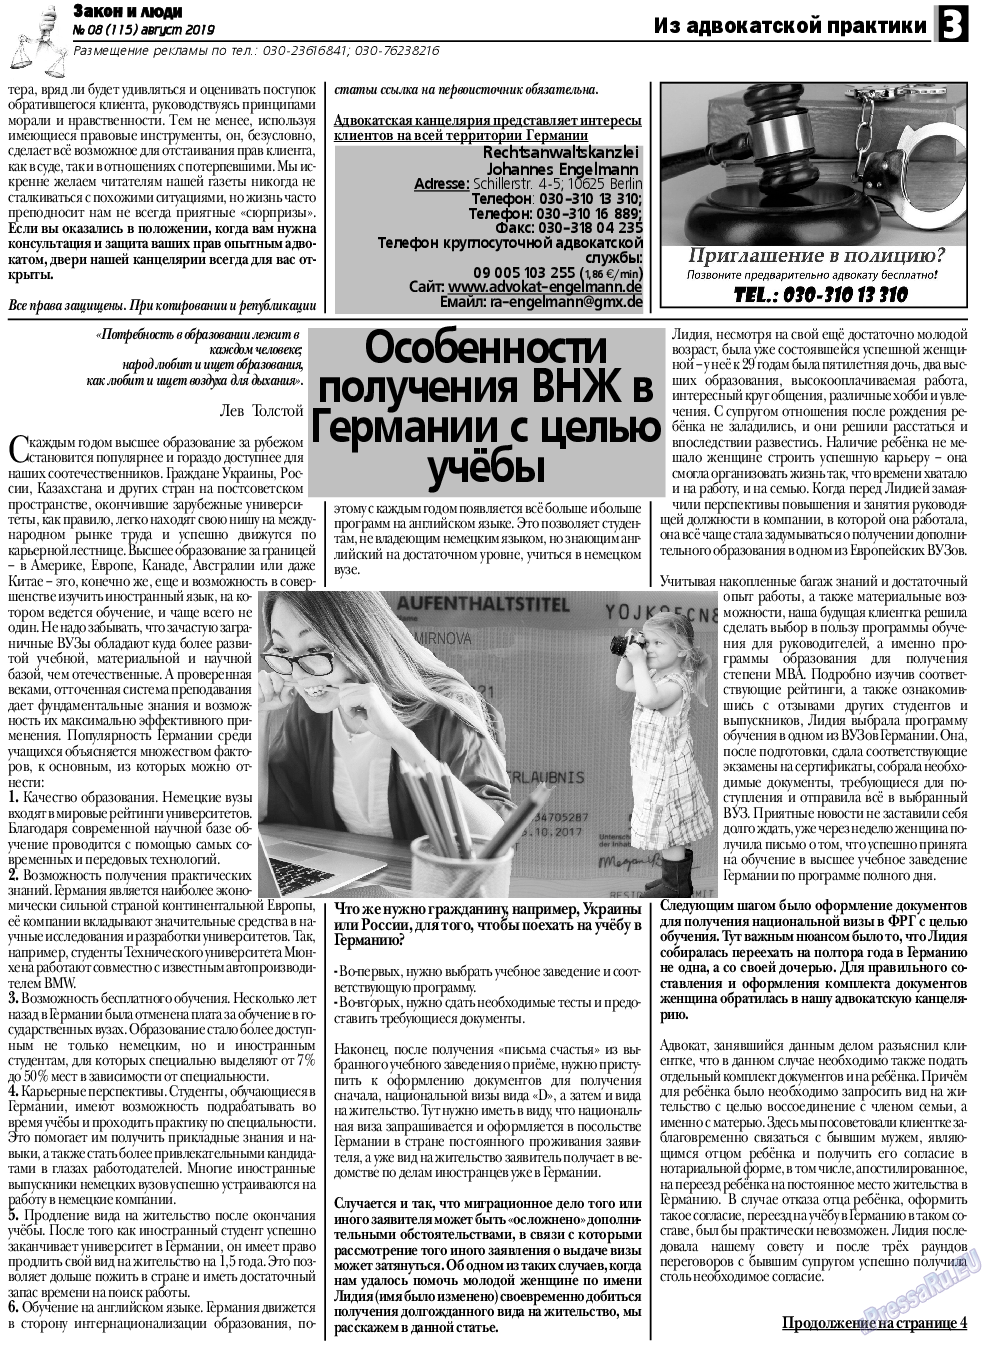 Закон и люди, газета. 2019 №8 стр.3